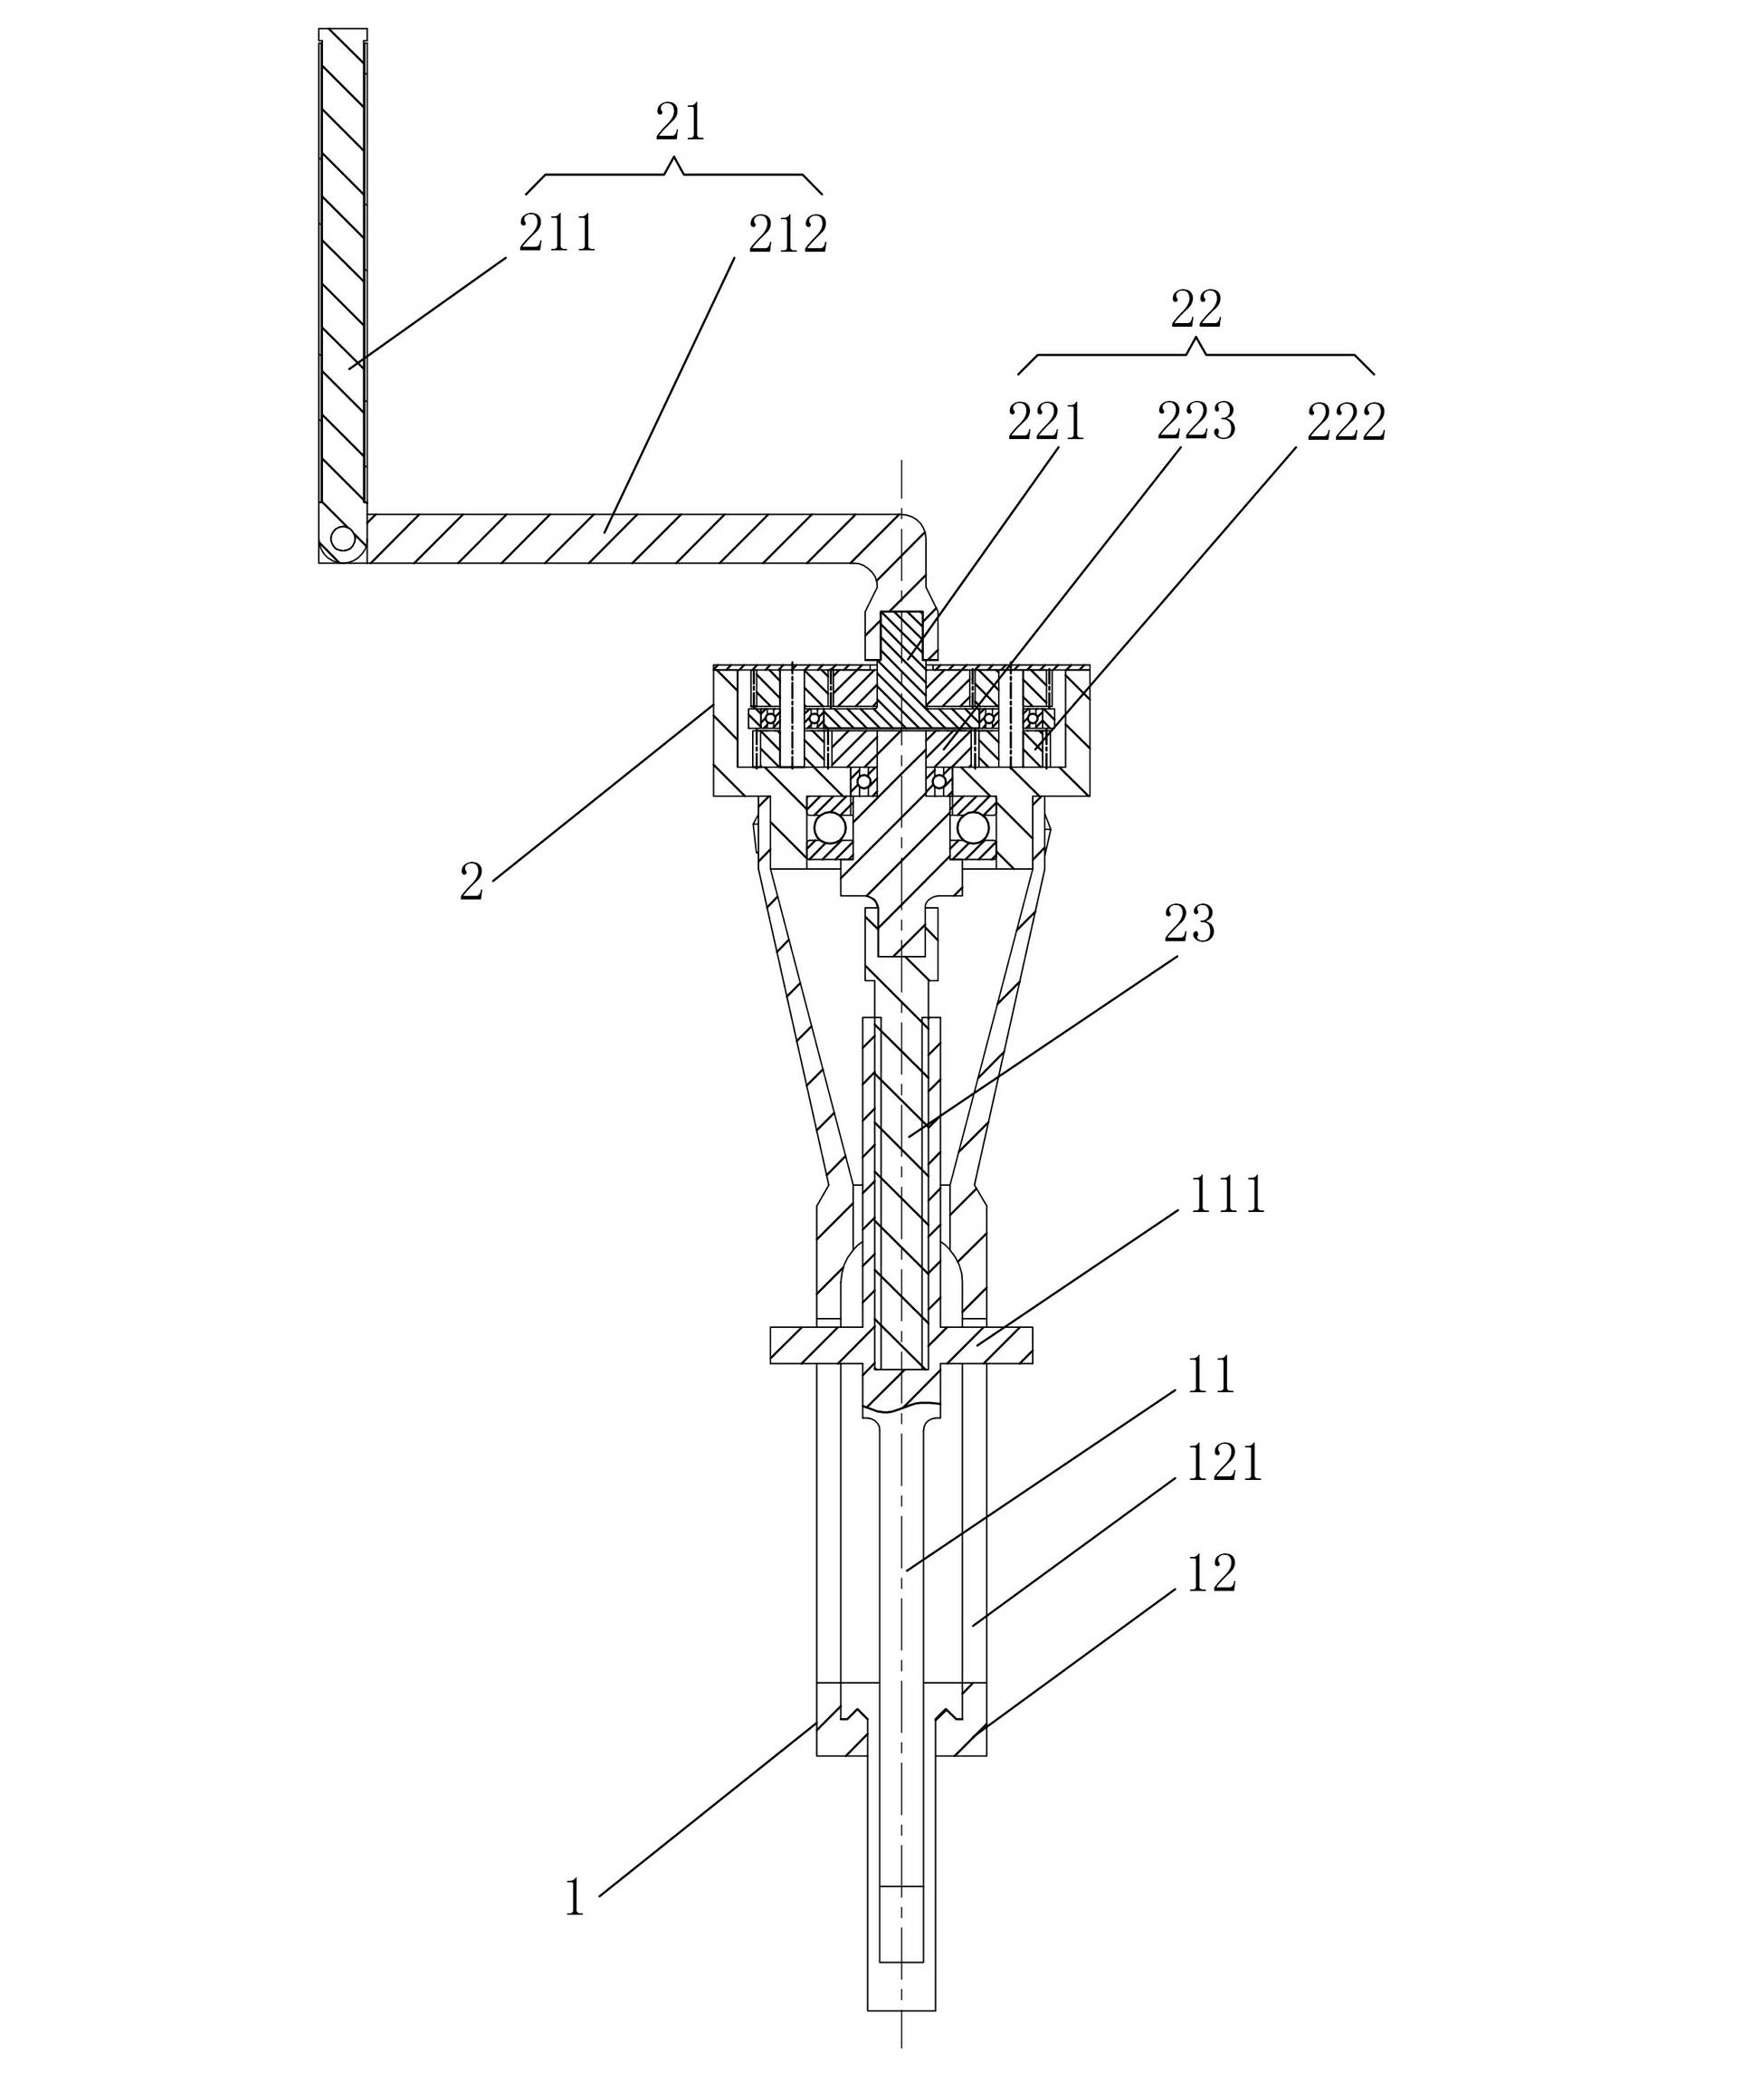 Manual splitter